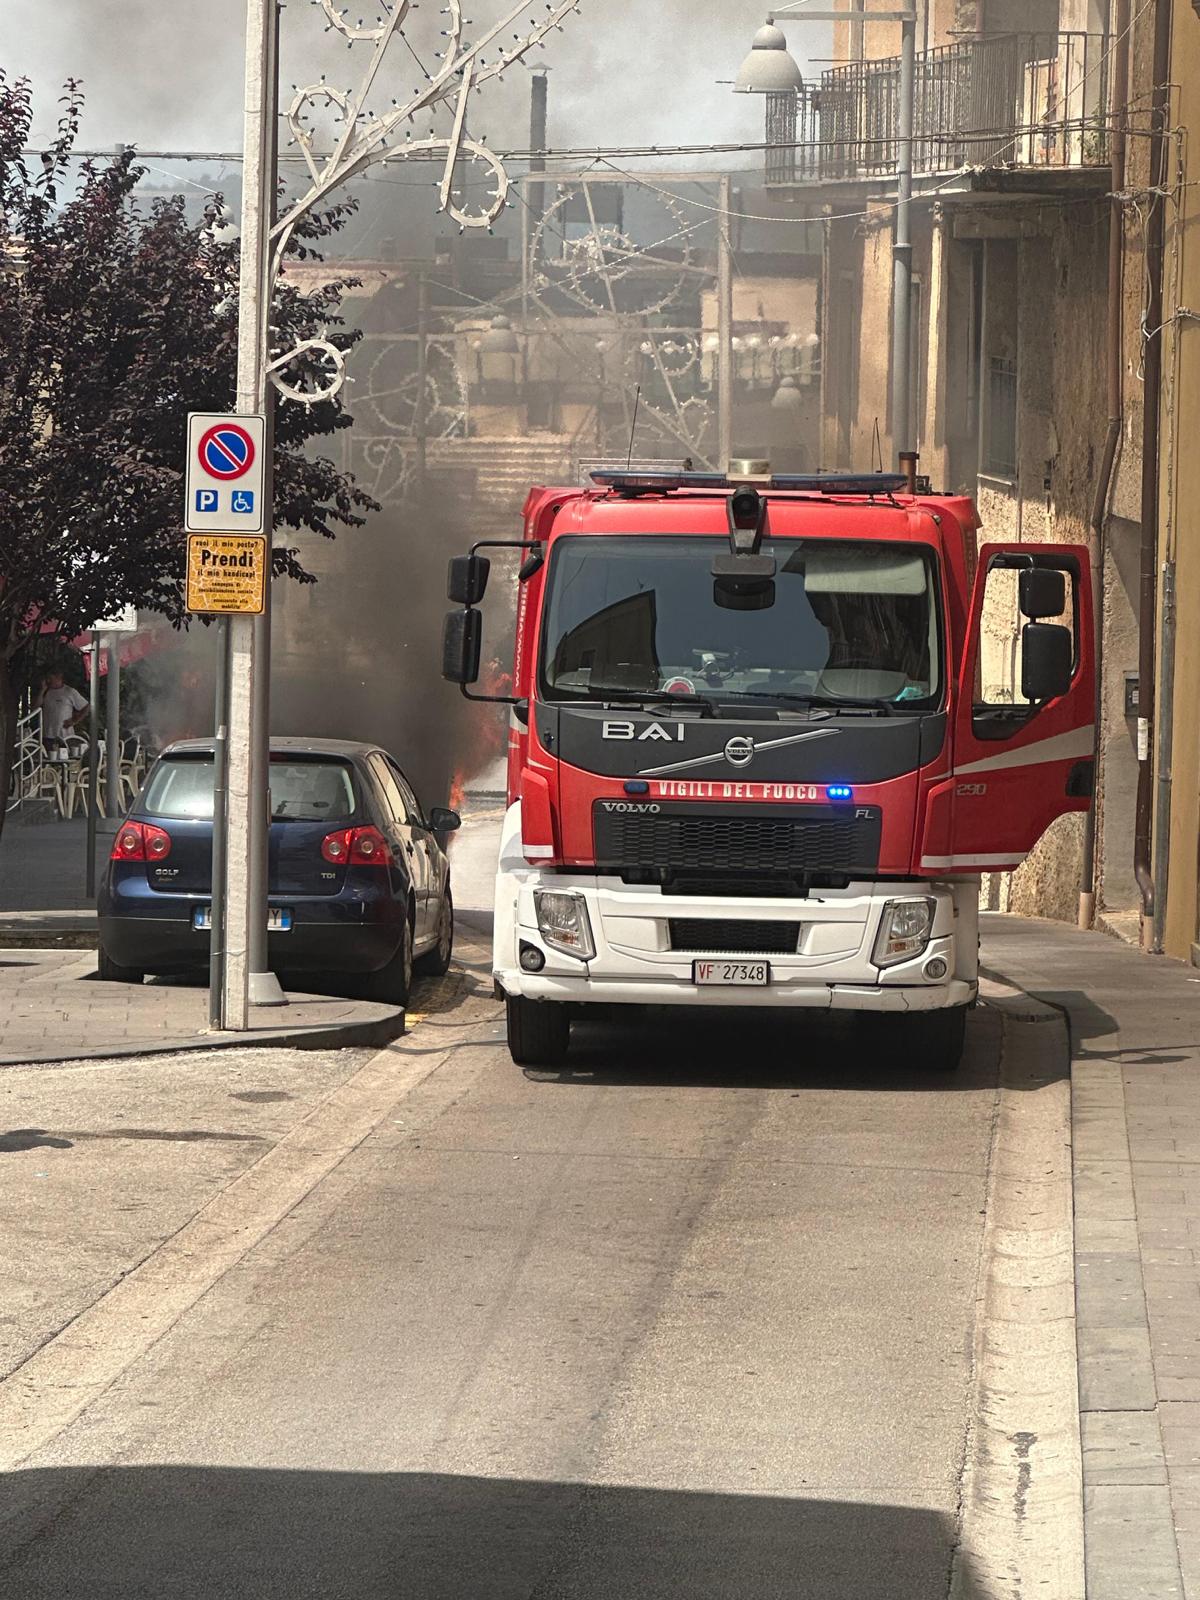 Vallo della Lucania, mezzo prende fuoco: intervengono i vigili